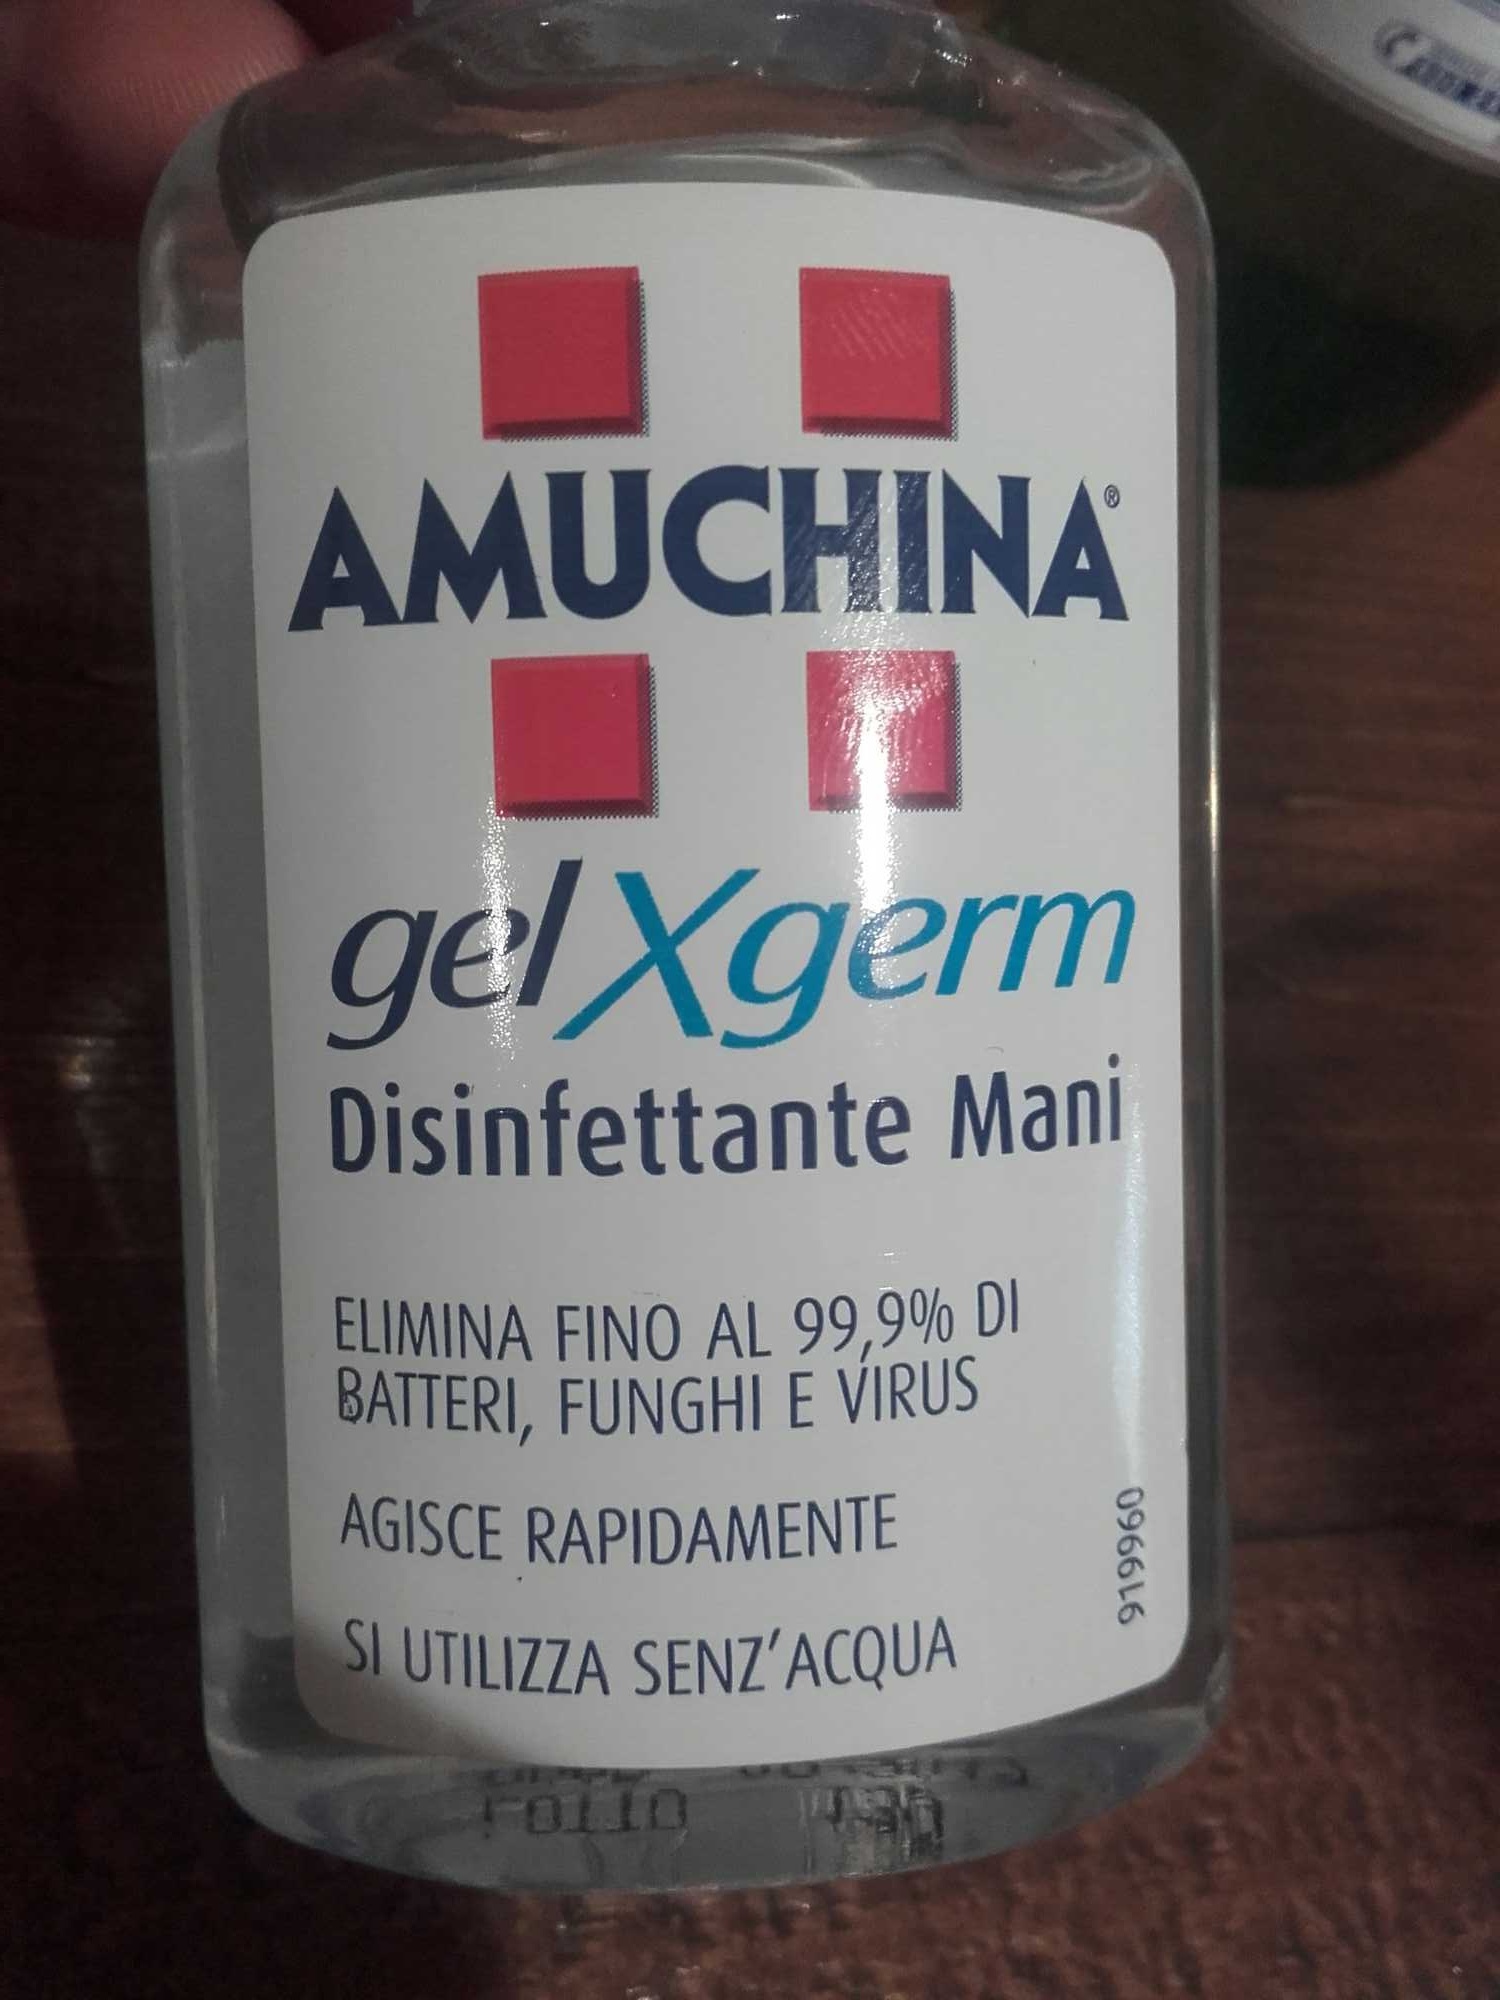 Gel Xgerm disinfettante Mani - Product - en